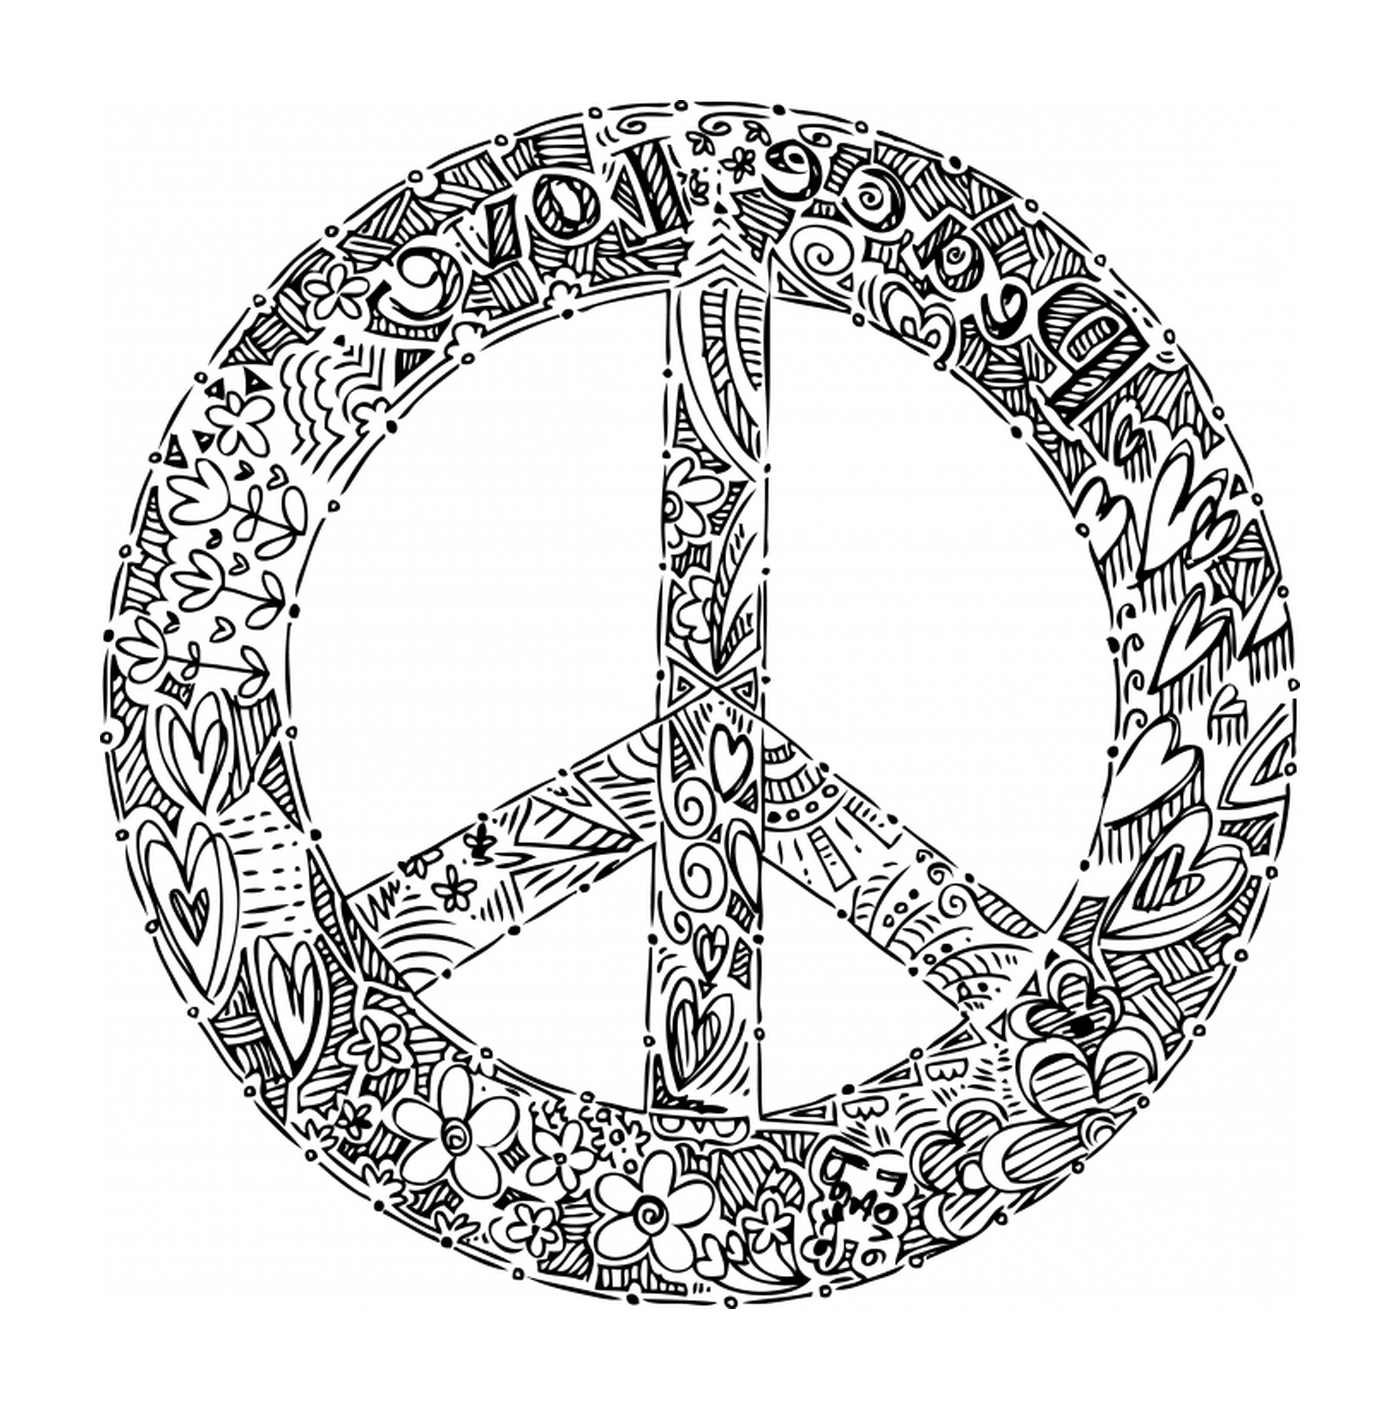  Мир и любовь, логотип 